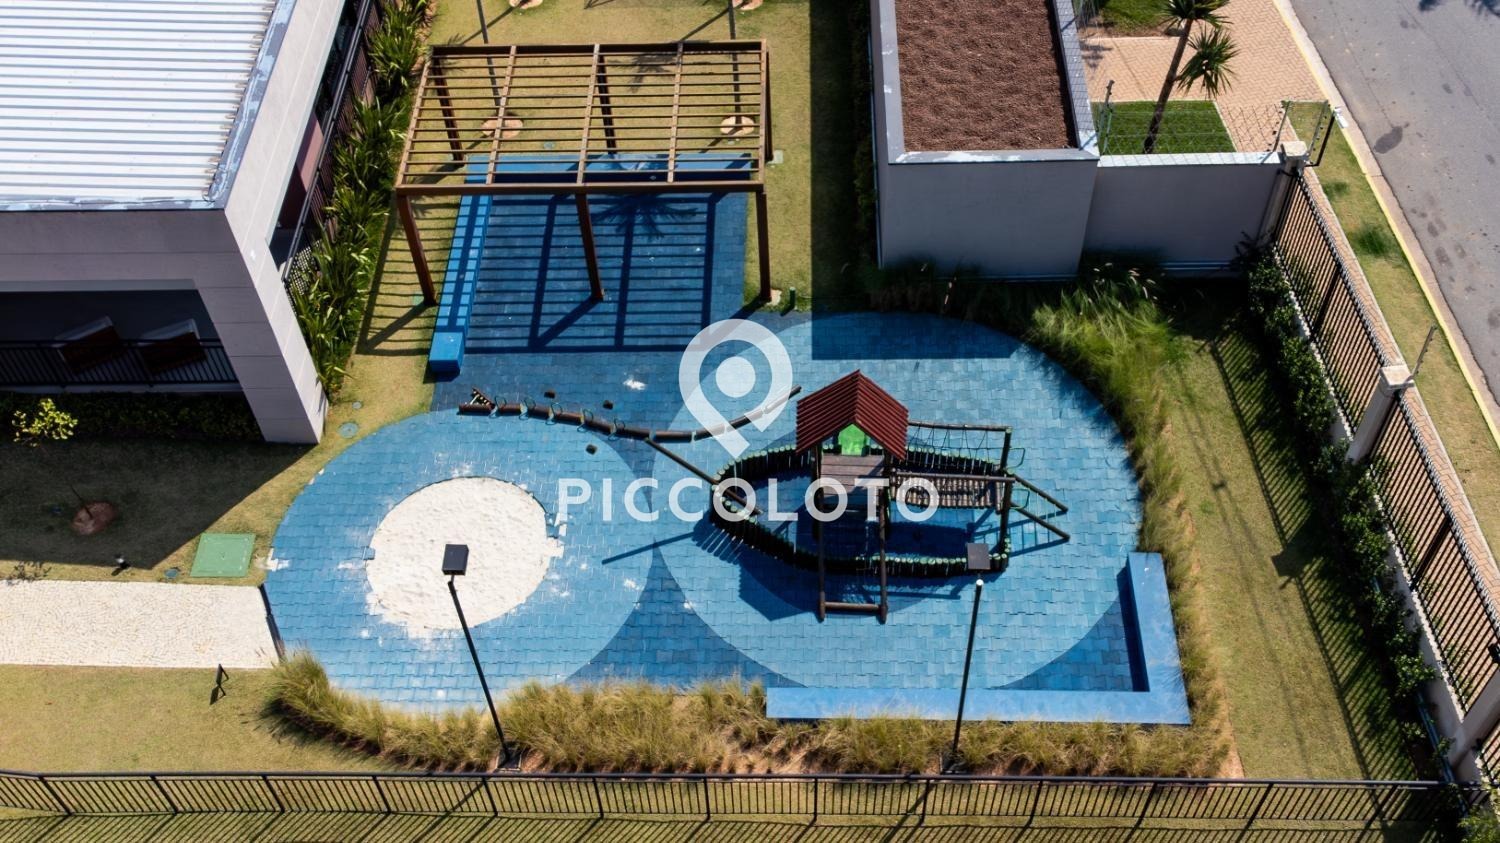 Piccoloto -Casa à venda no Loteamento Residencial Arborais em Campinas